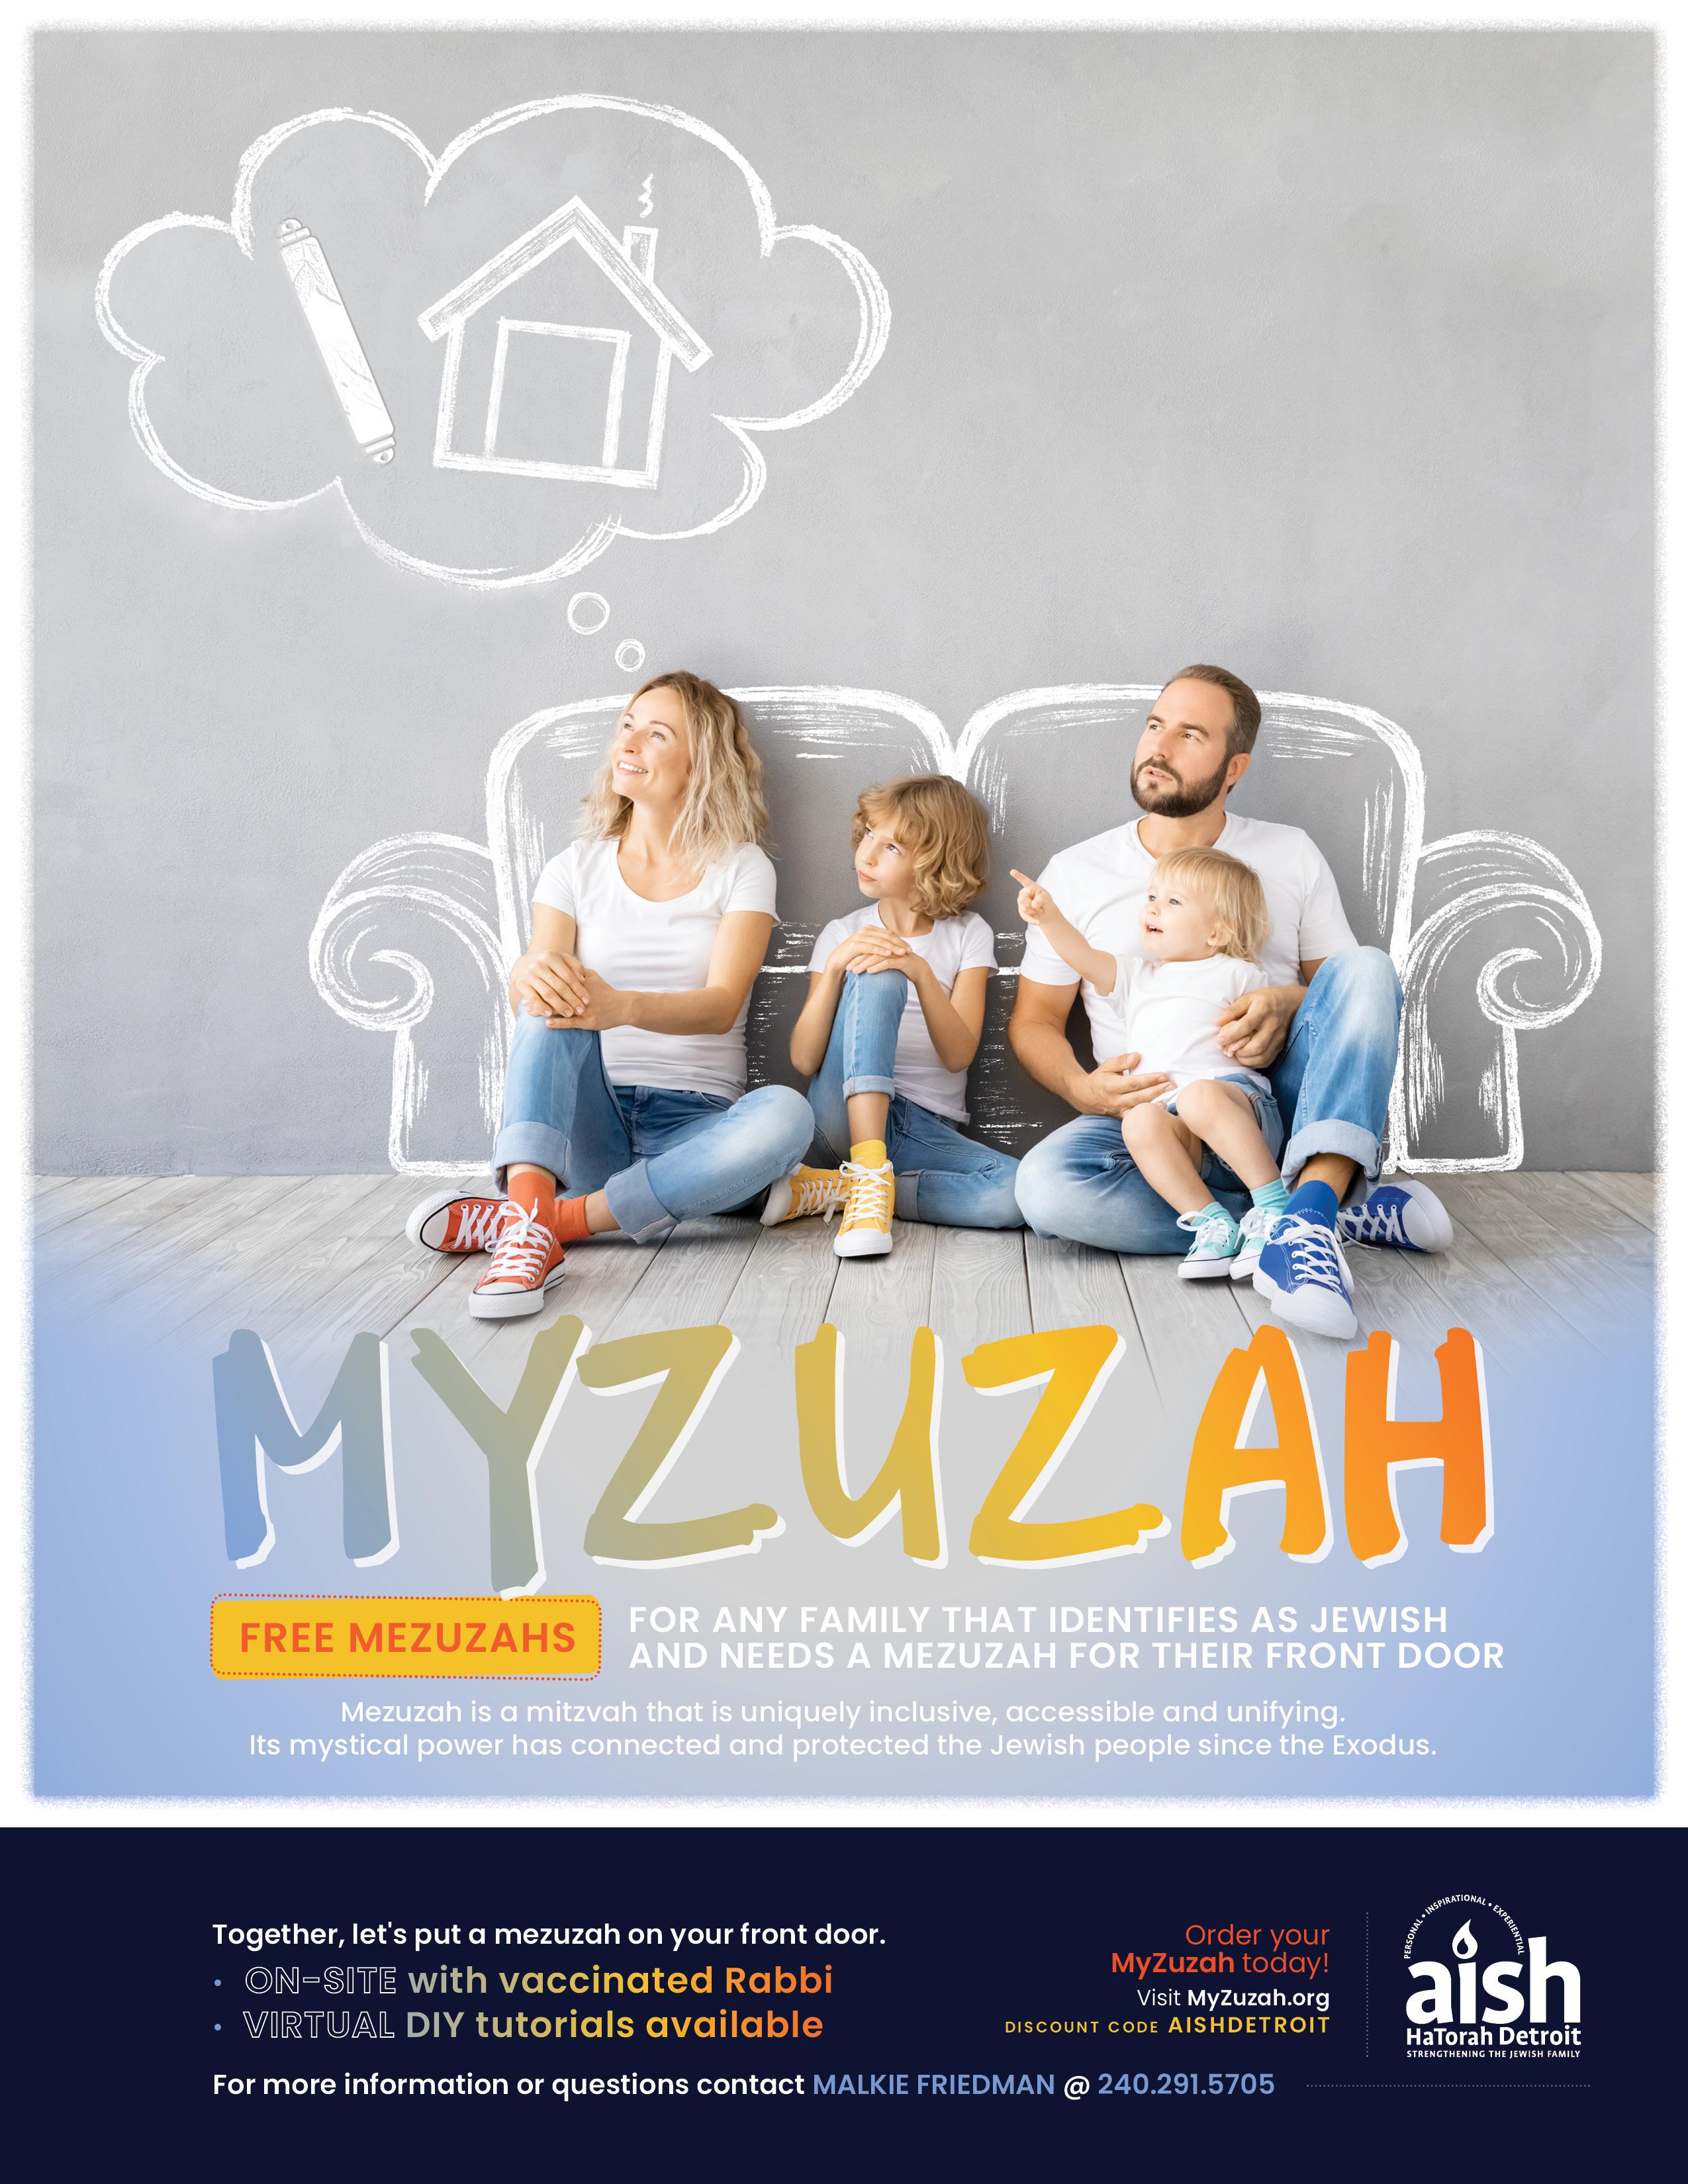 aish myzuzah 2021 (1)-20211118-021655.jpg